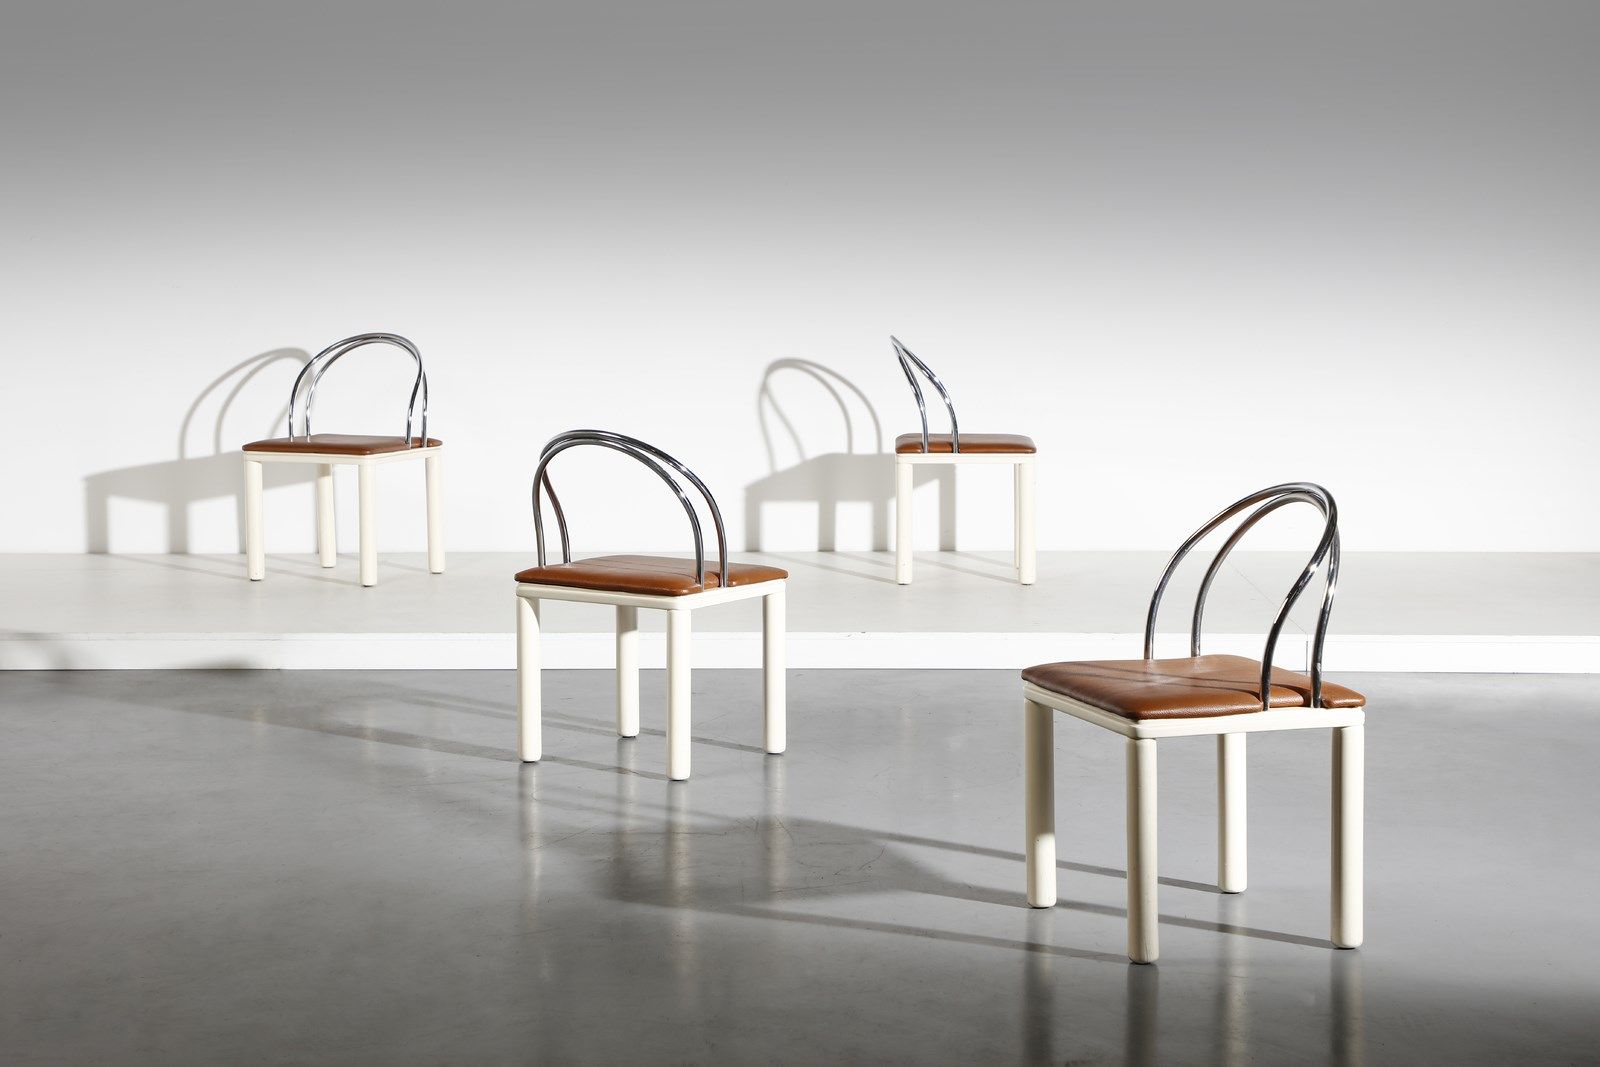 Manifattura Italiana MANIFATTURA ITALIANA 四把椅子。漆木和镀铬金属。Cm 50.00 x 70.00 x 45.00.&hellip;